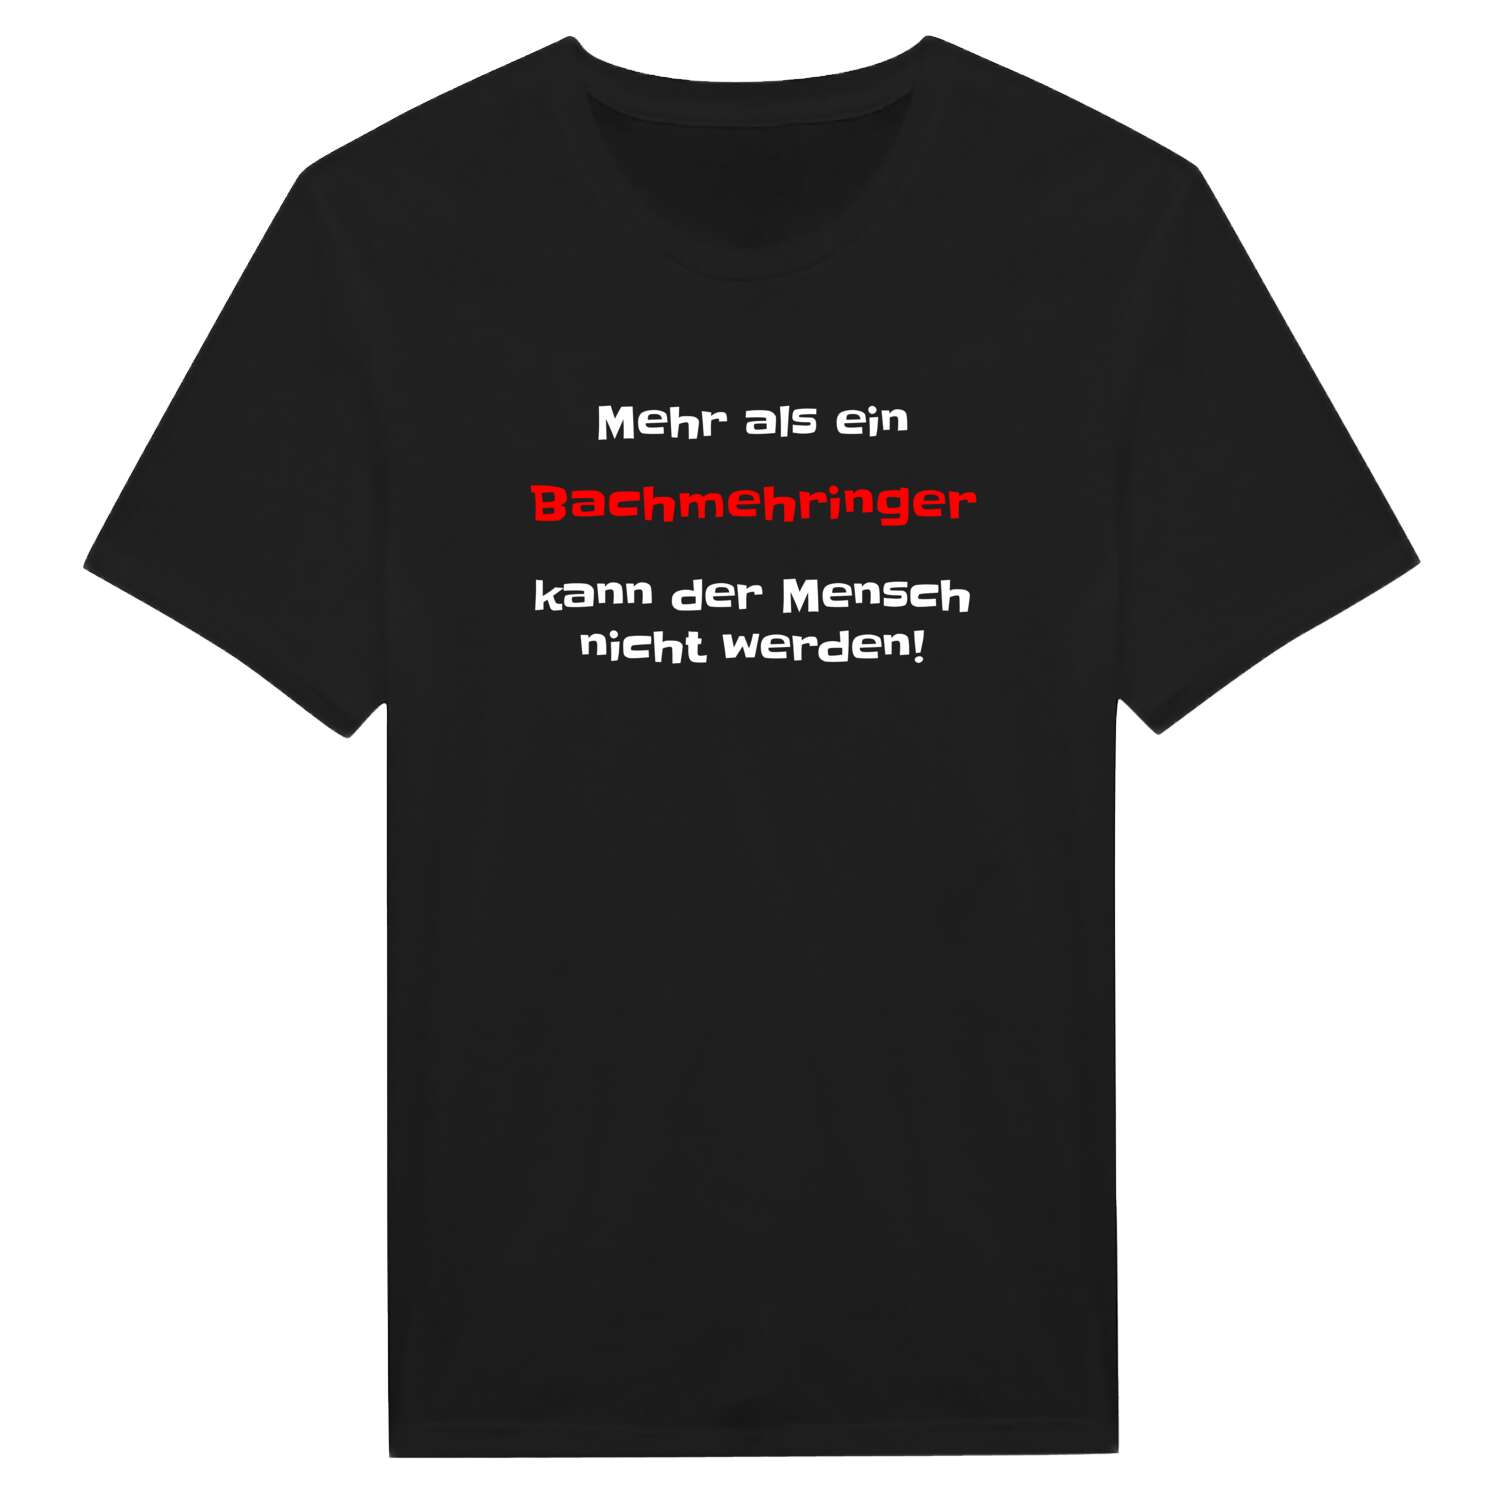 Bachmehring T-Shirt »Mehr als ein«